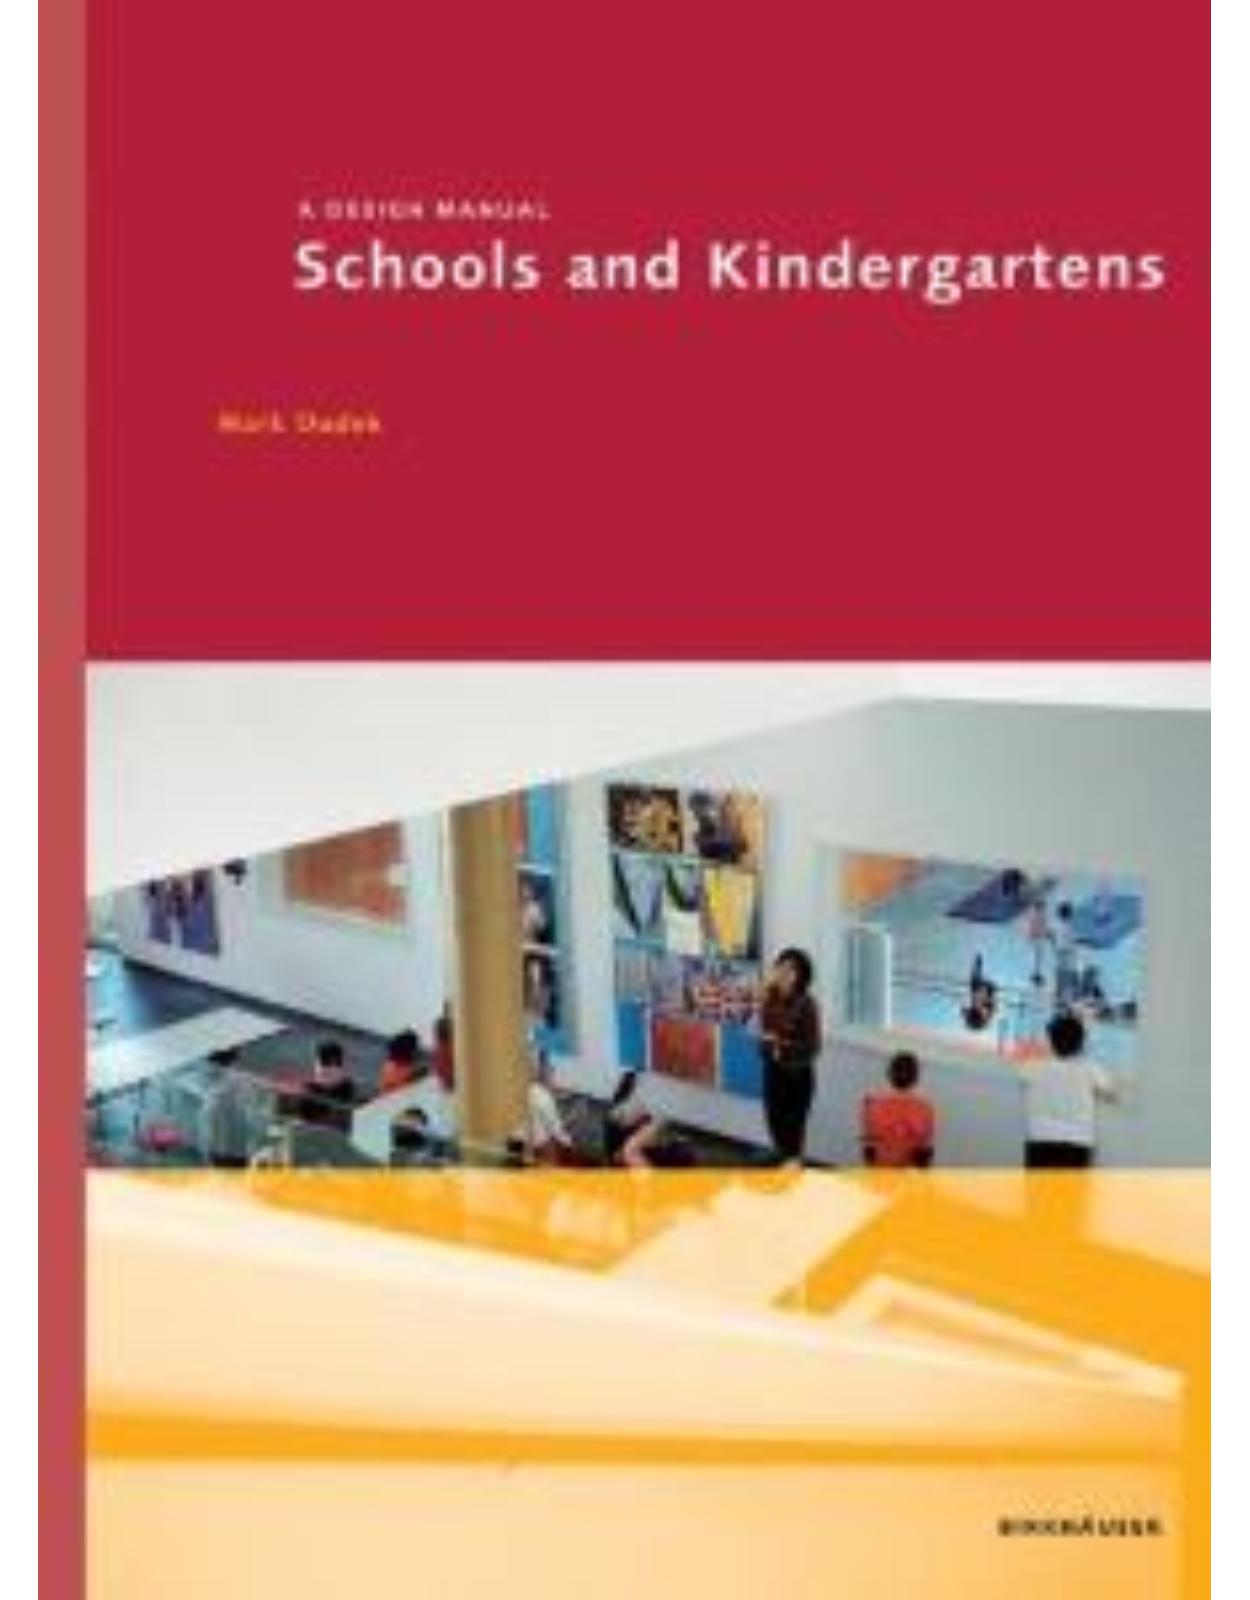 Schools and Kindergartens -  A Design Manual